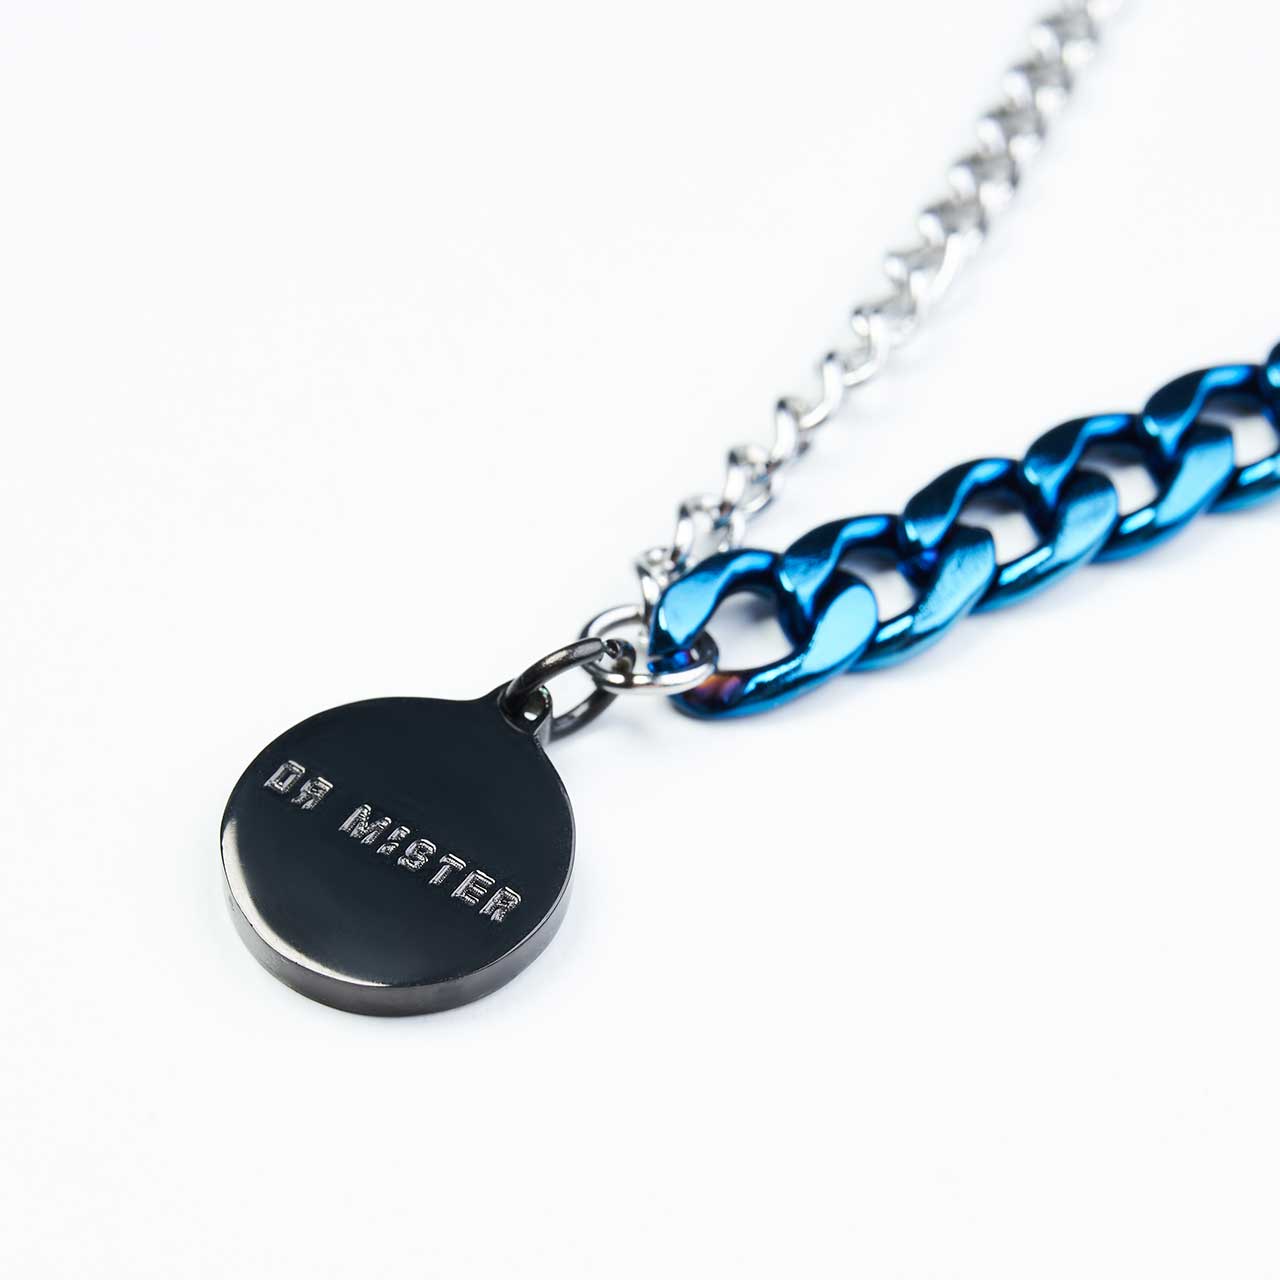 Miniature Tint Pendant Necklace - Blue